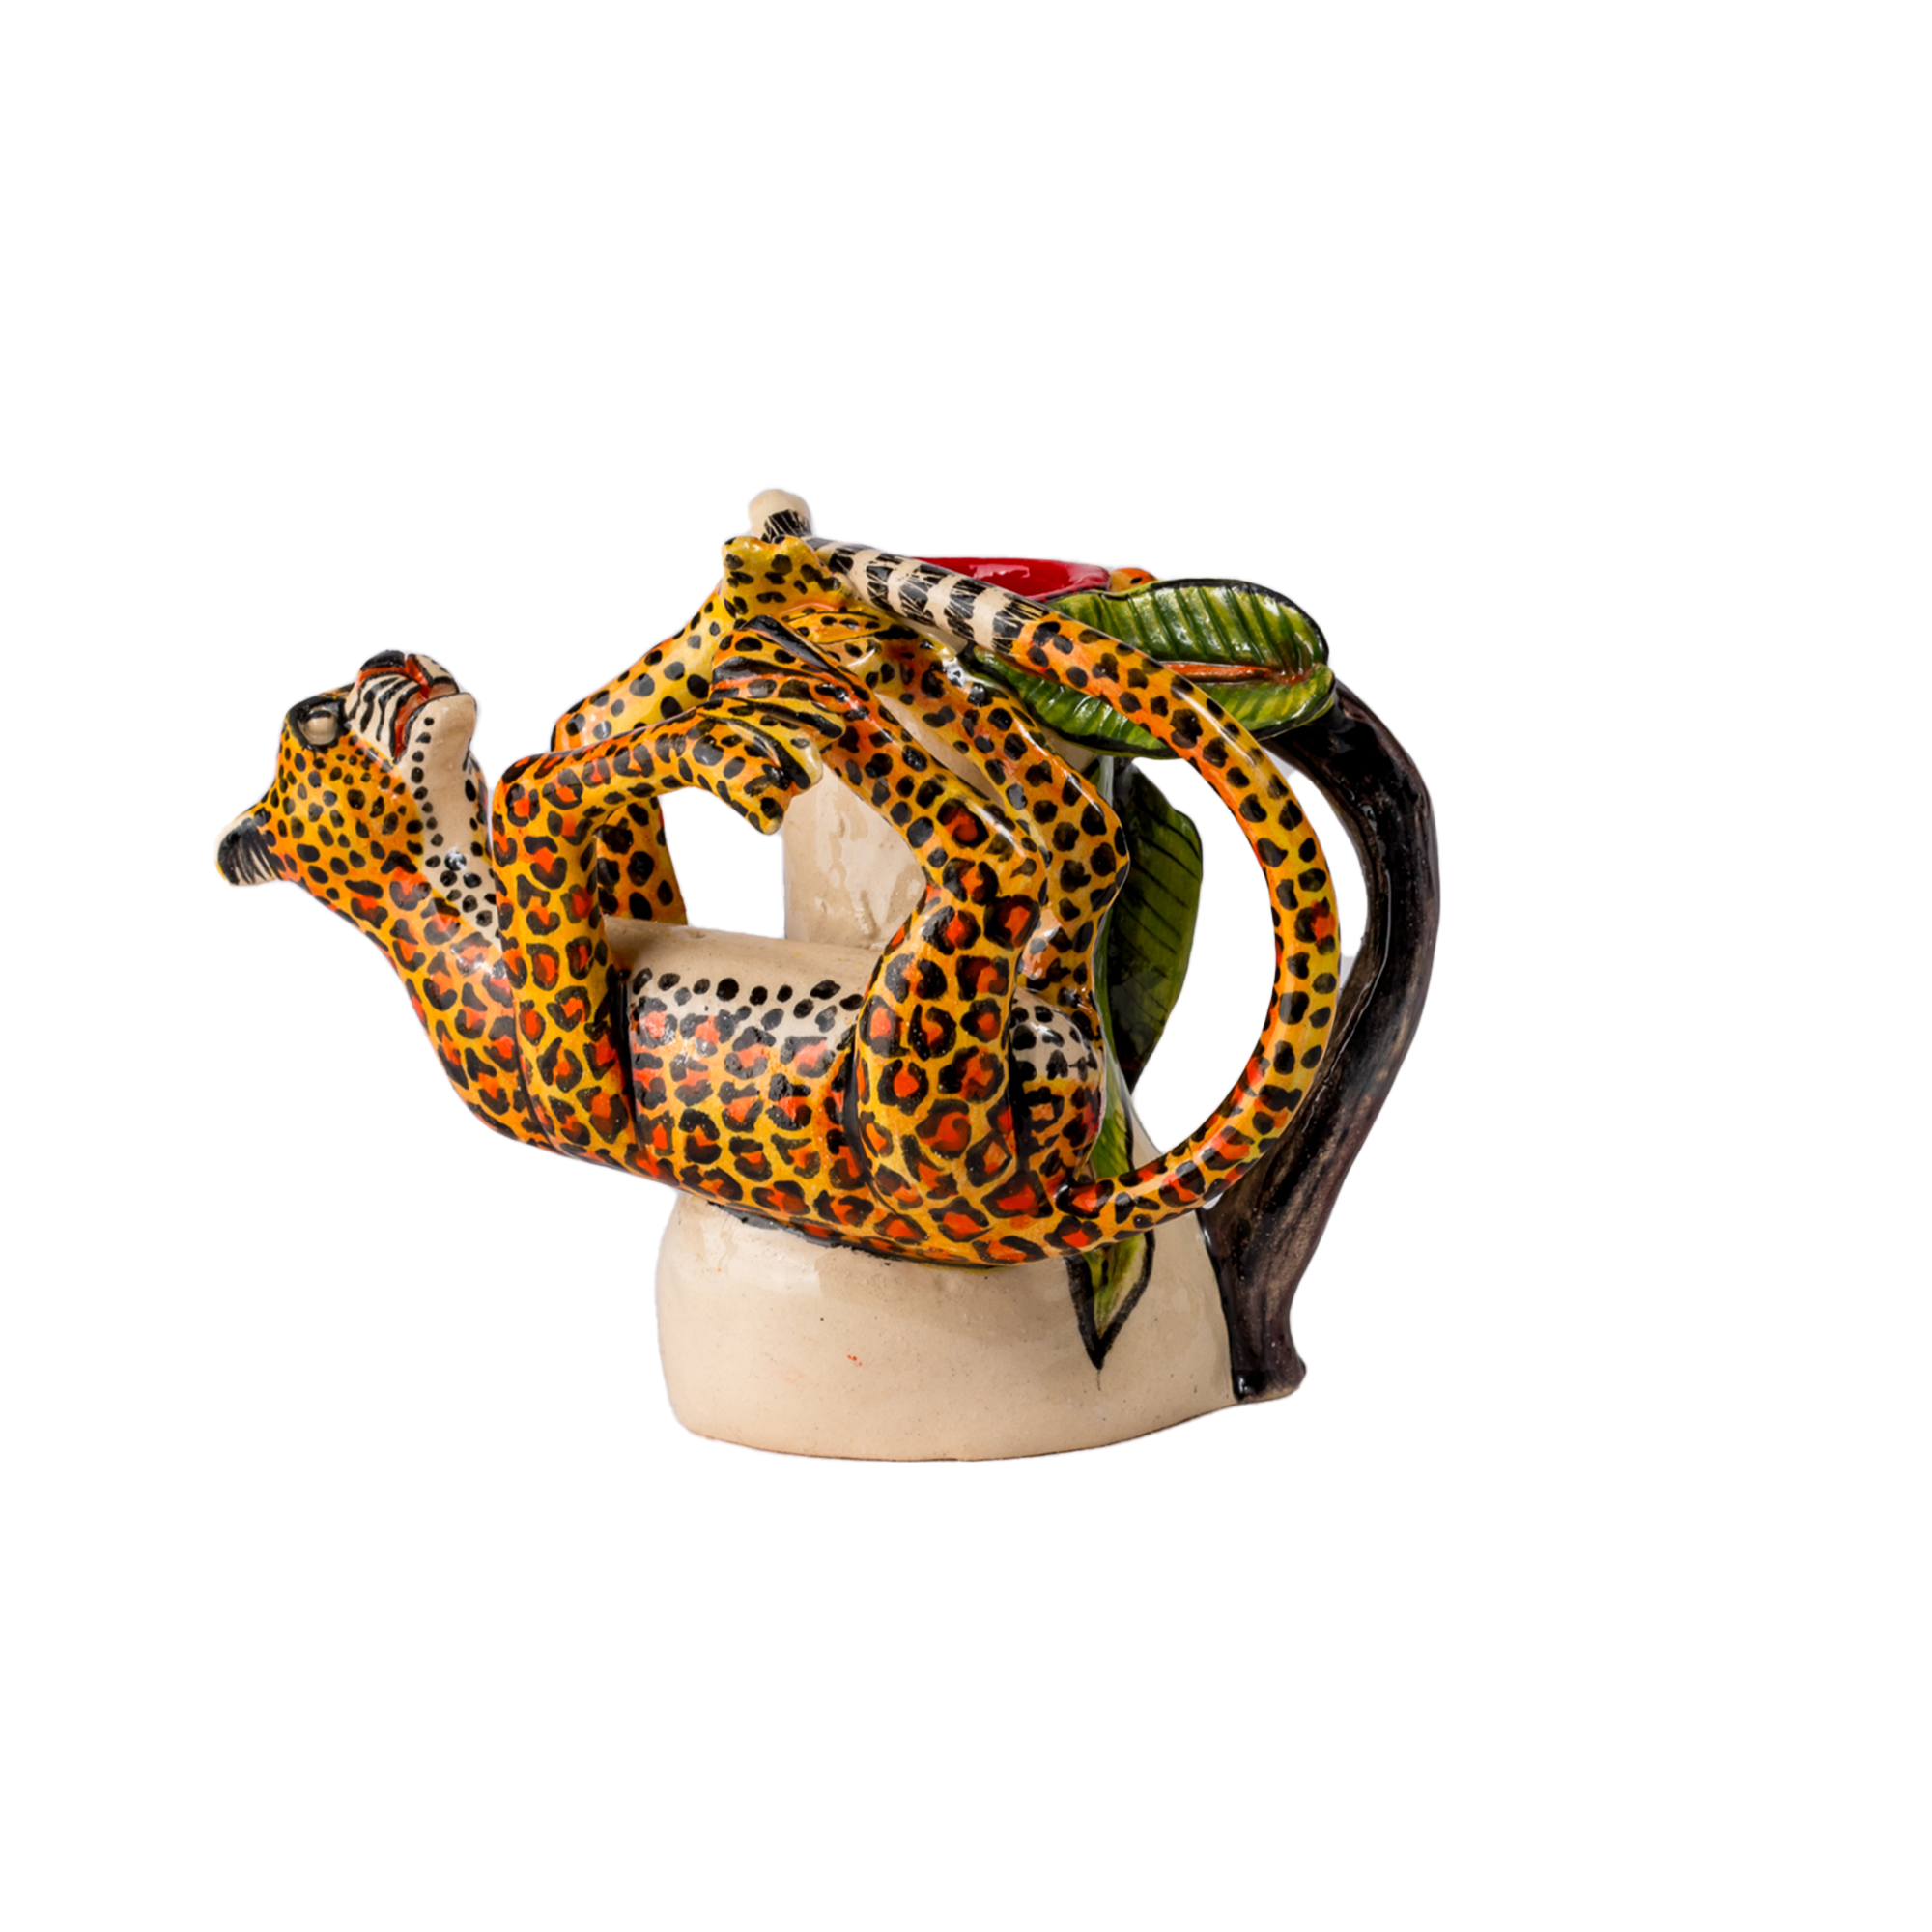 3D Ceramic Leopard Candle Holder